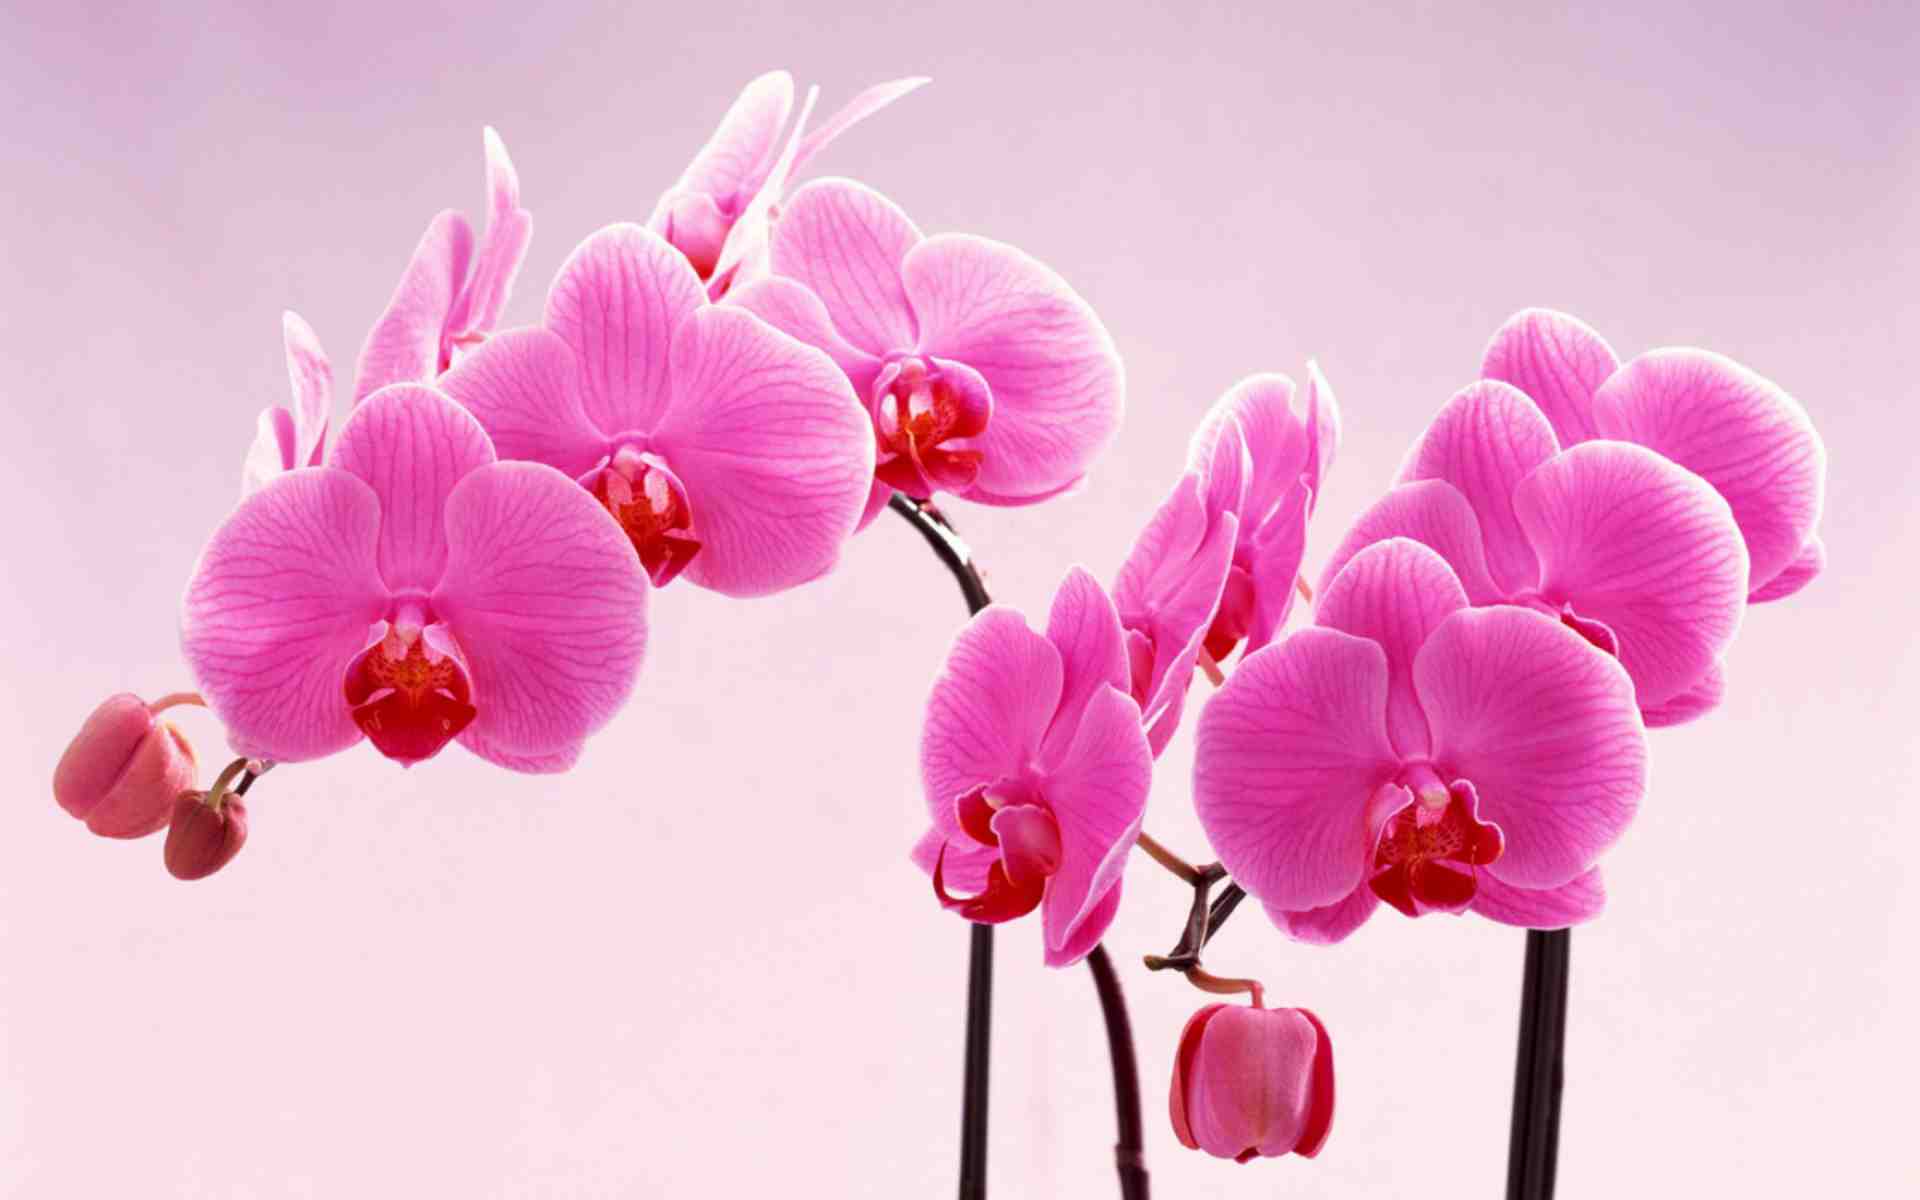 hình nền hoa lan hồ điệp 6 – Vườn Lan Hà Nội